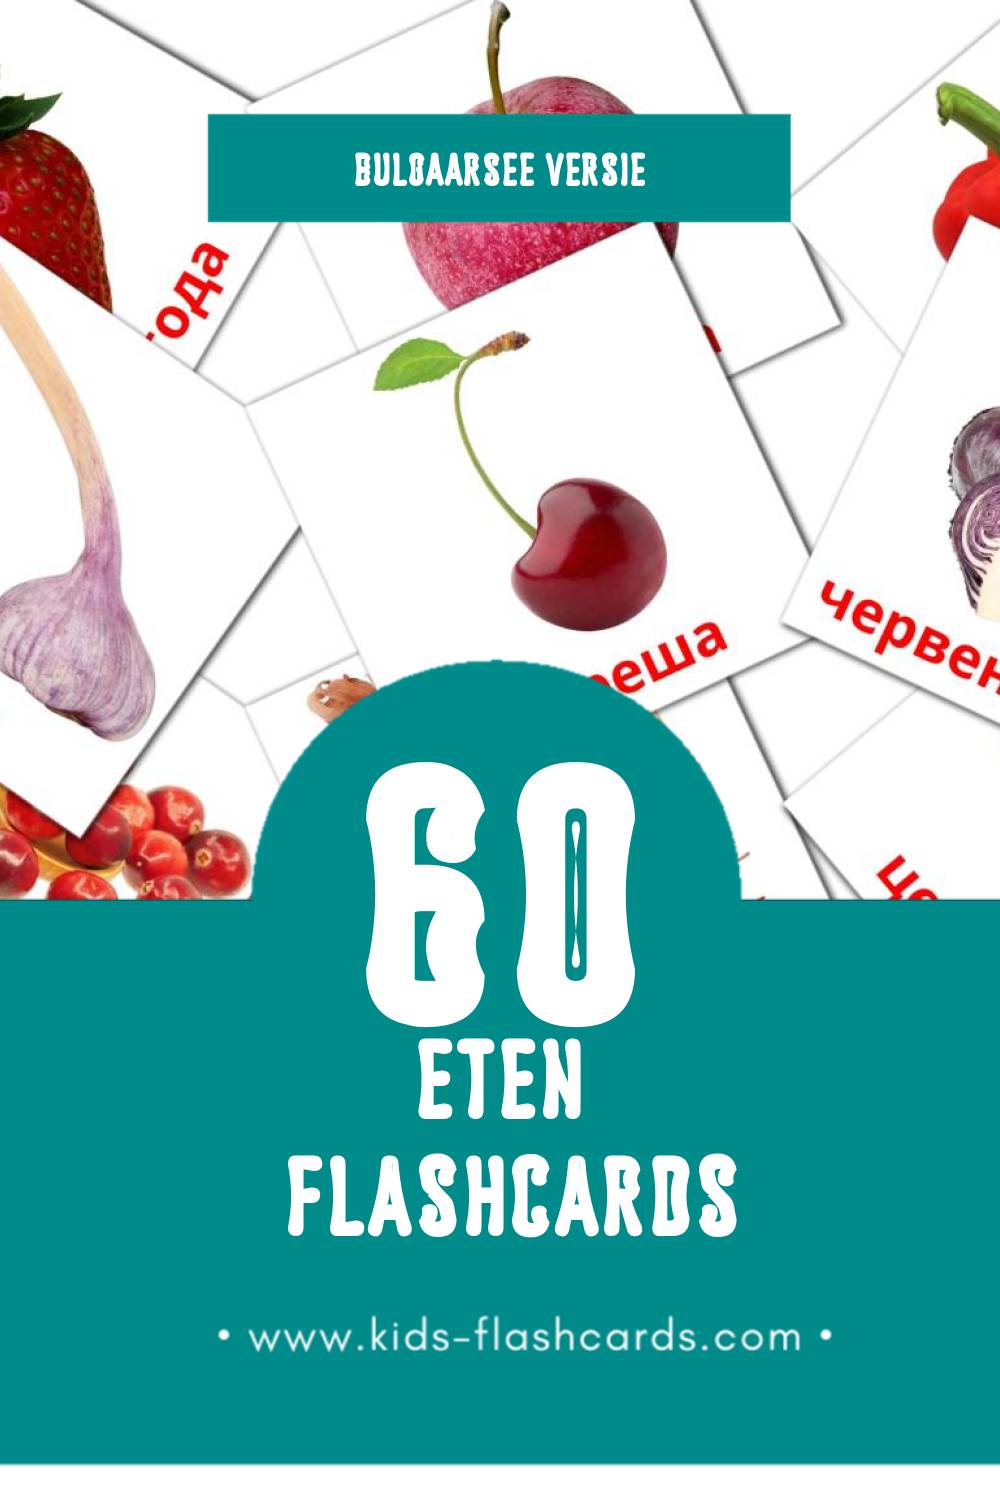 Visuele Храна Flashcards voor Kleuters (60 kaarten in het Bulgaarse)